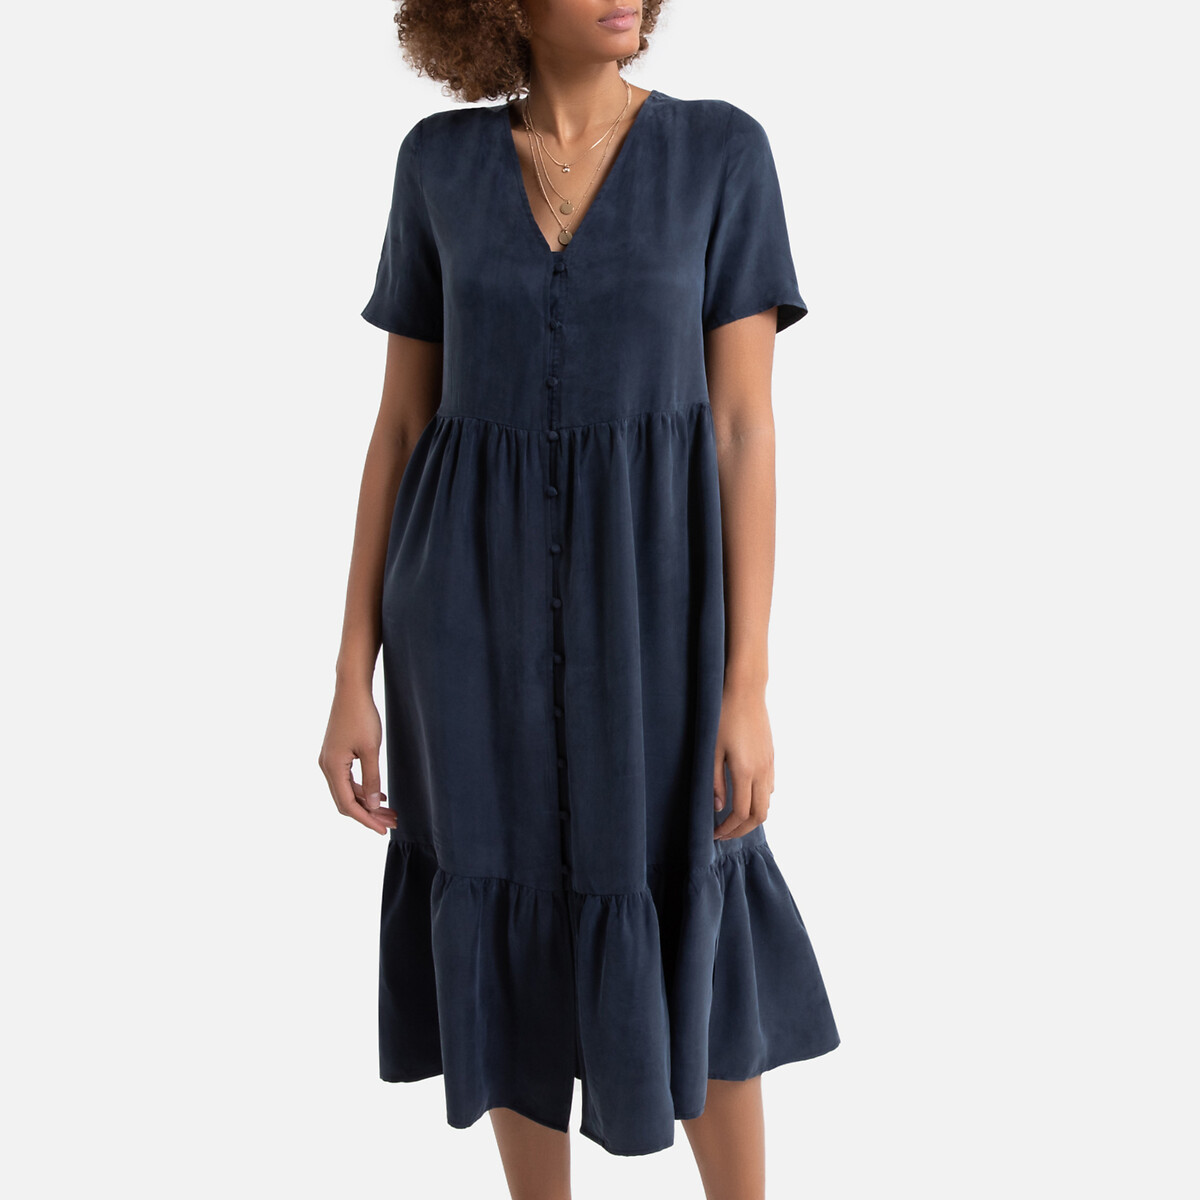 Платье La Redoute С V-образным вырезом с короткими рукавами средней длины 38 (FR) - 44 (RUS) синий, размер 38 (FR) - 44 (RUS) С V-образным вырезом с короткими рукавами средней длины 38 (FR) - 44 (RUS) синий - фото 1